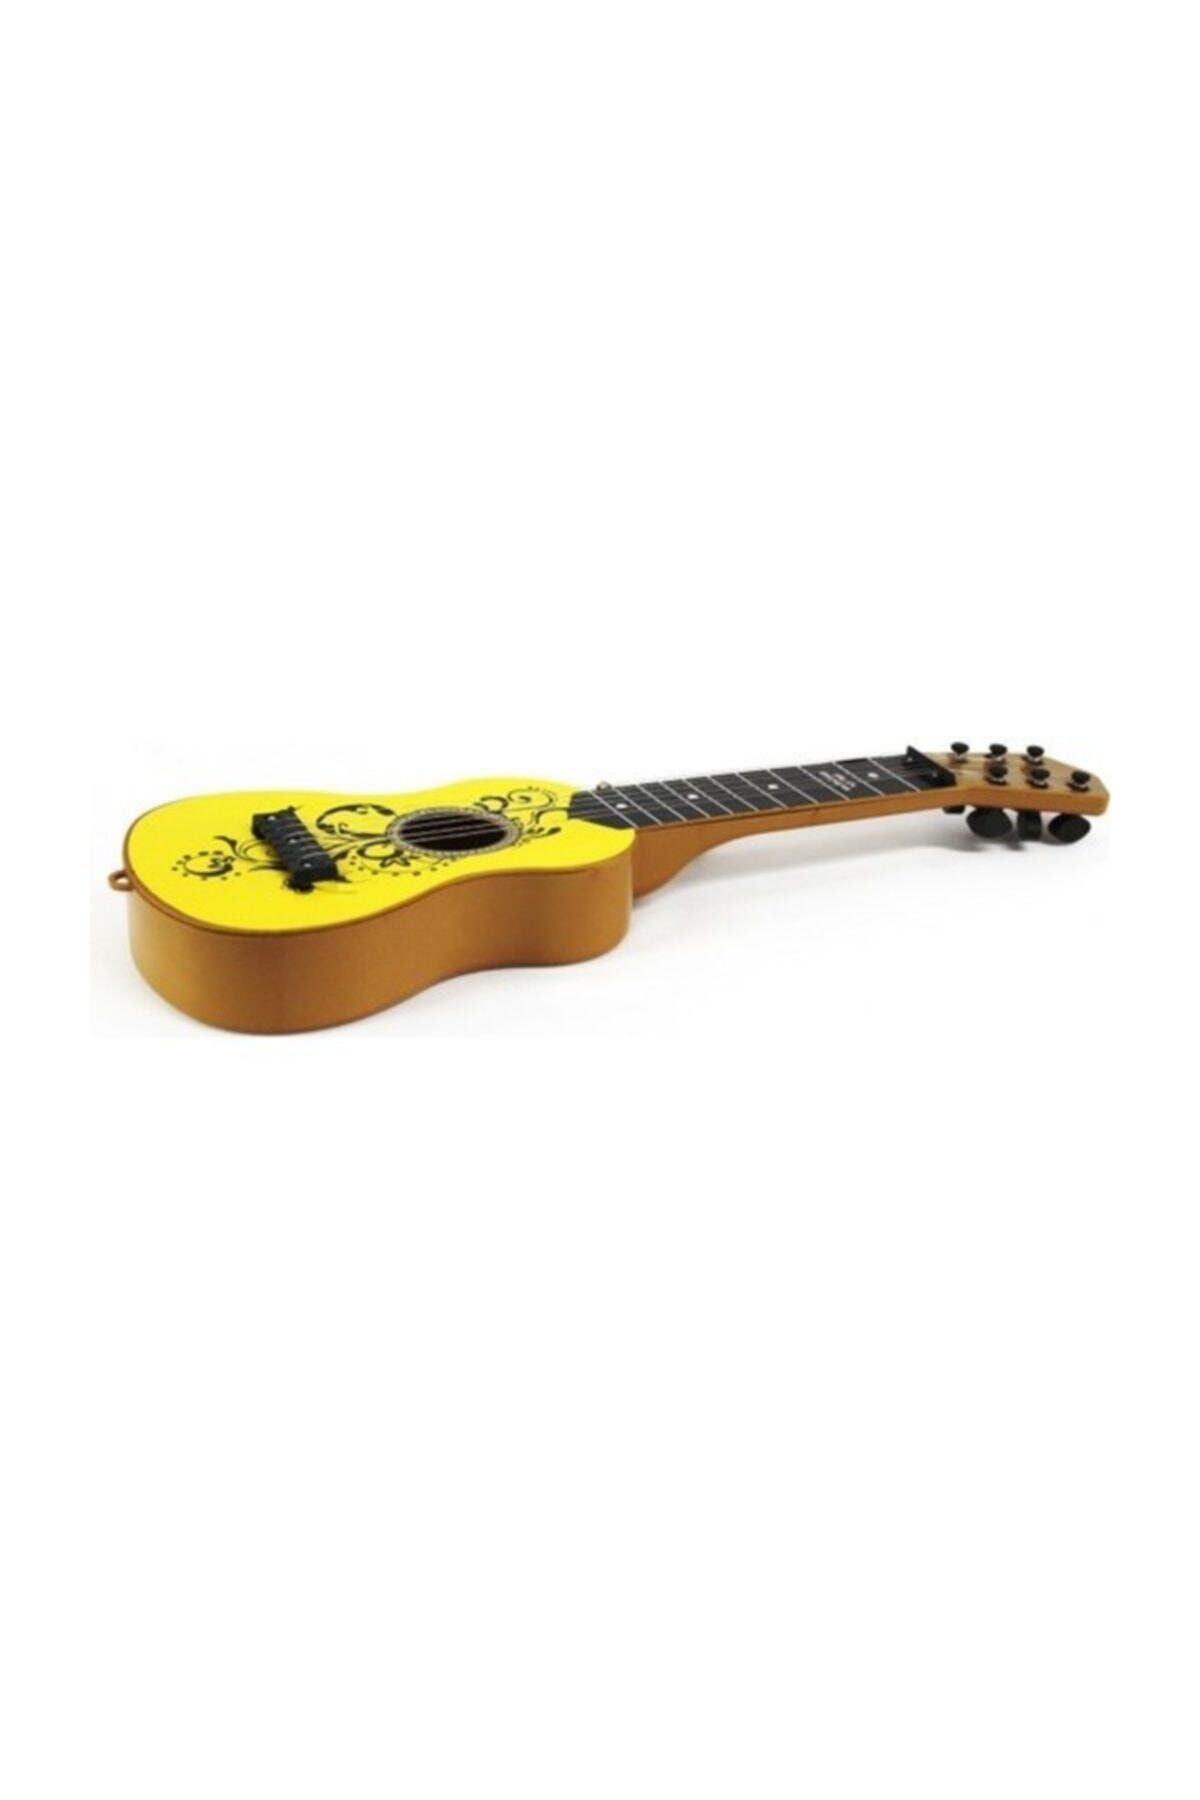 aslan oyuncak Ispanyol Gitar Sarı Renk Müzik Aleti